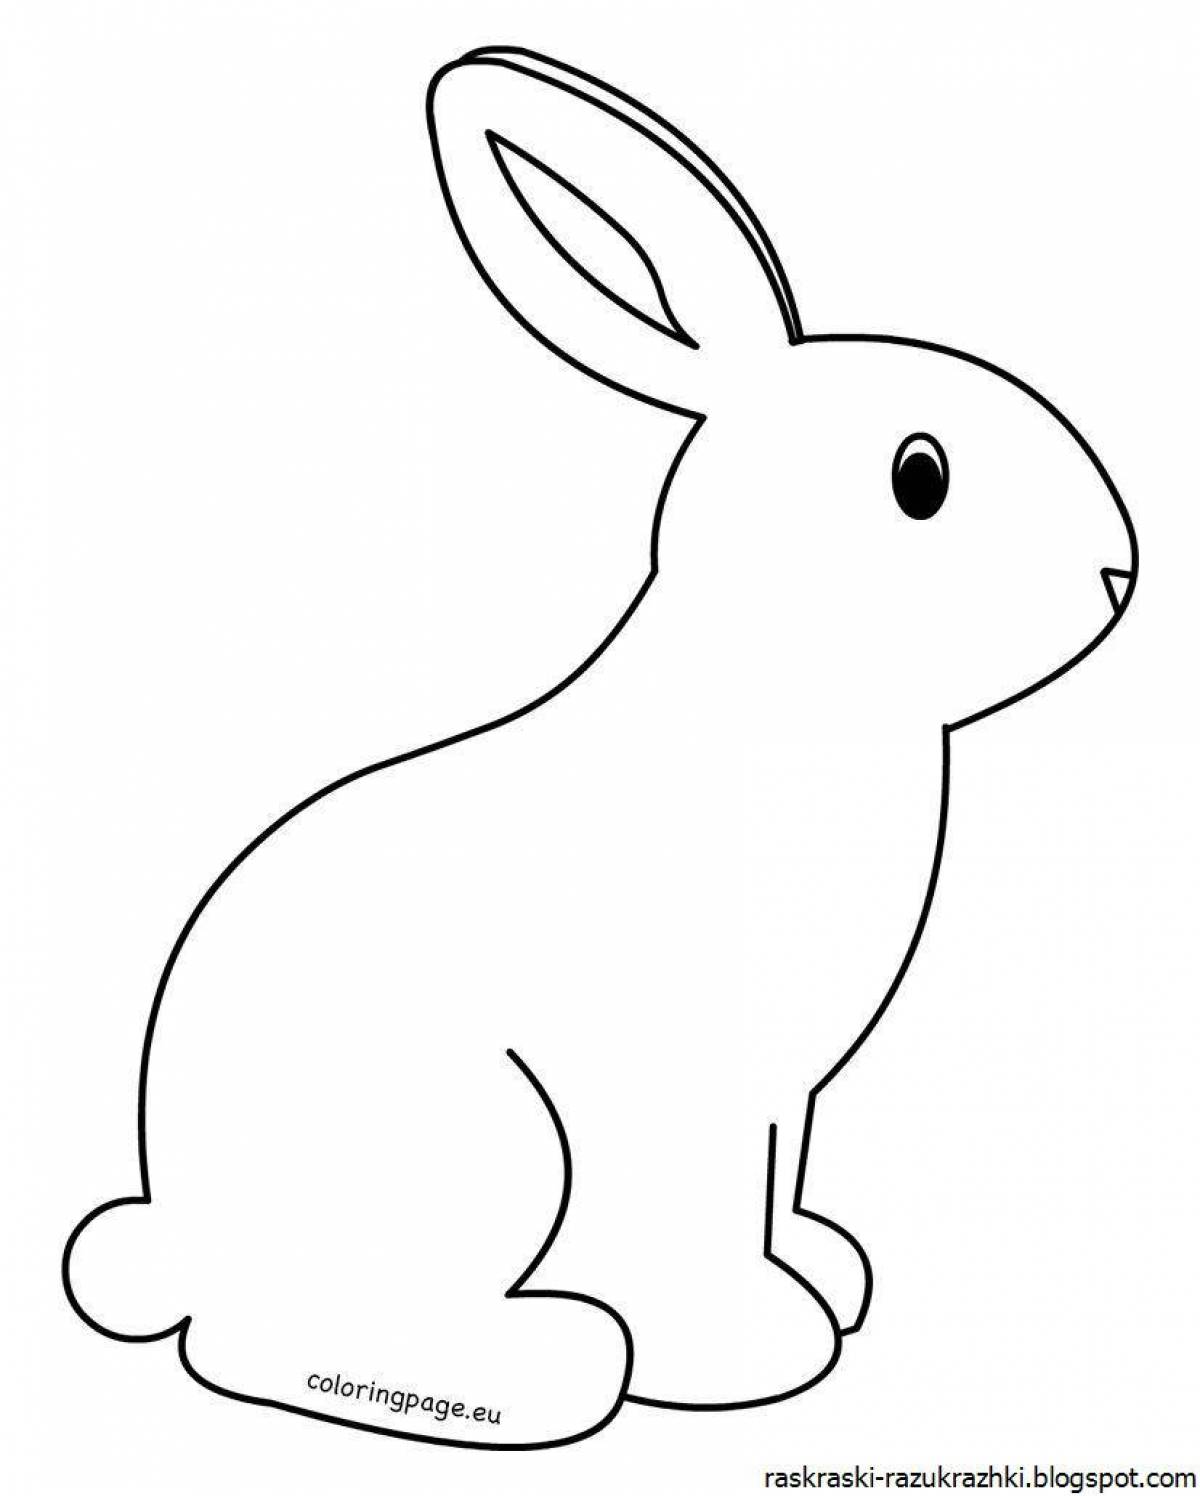 Замечательная раскраска кролик для детей 3-4 лет